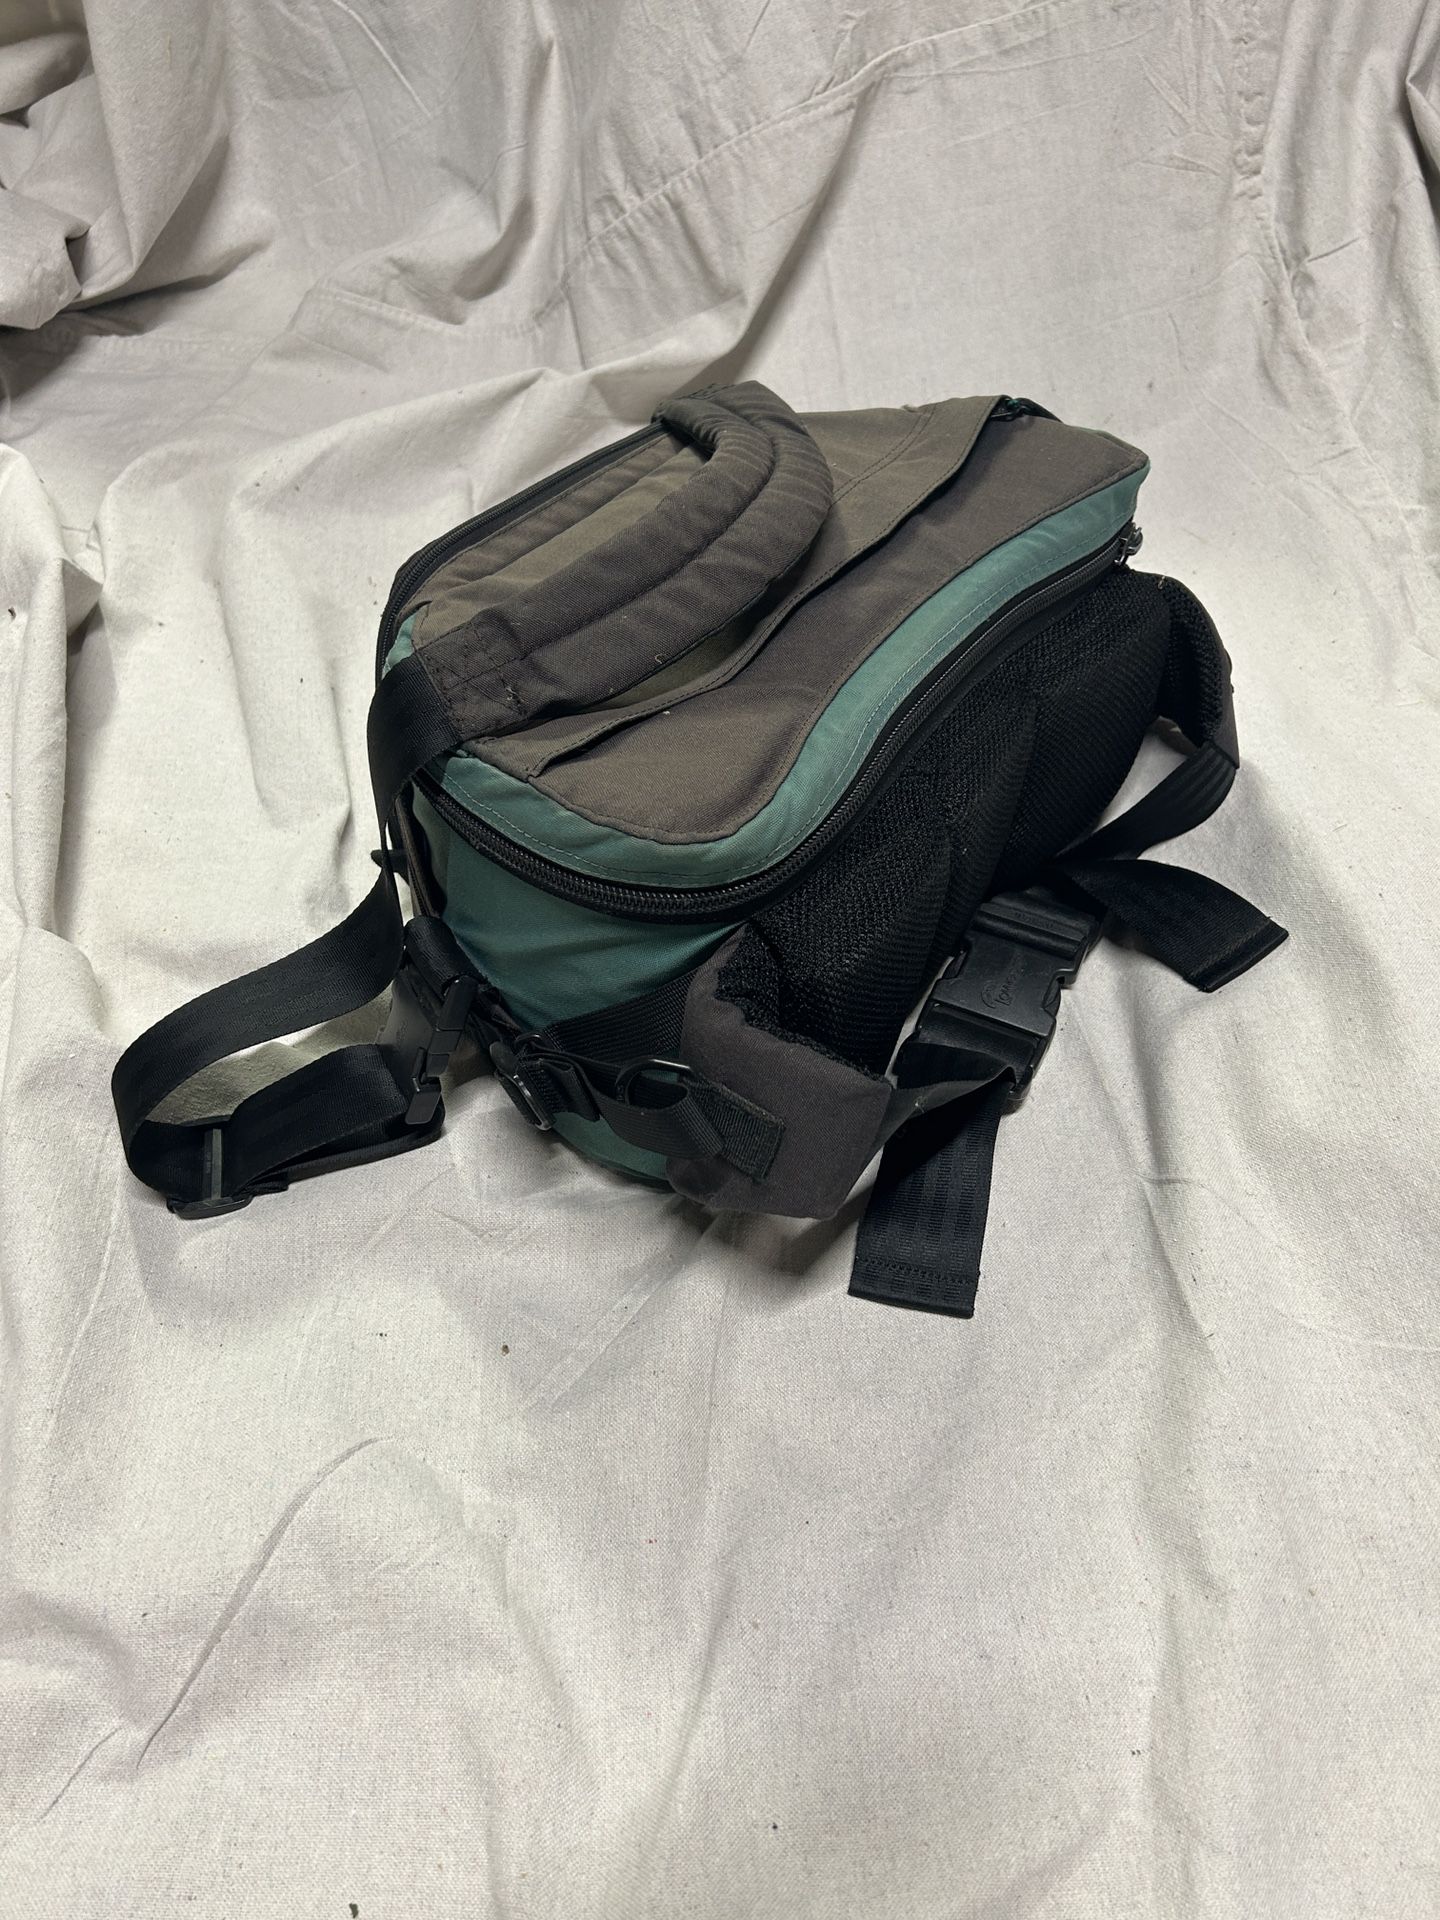 Camera Bag With Shoulder Strap Or Back Pack 